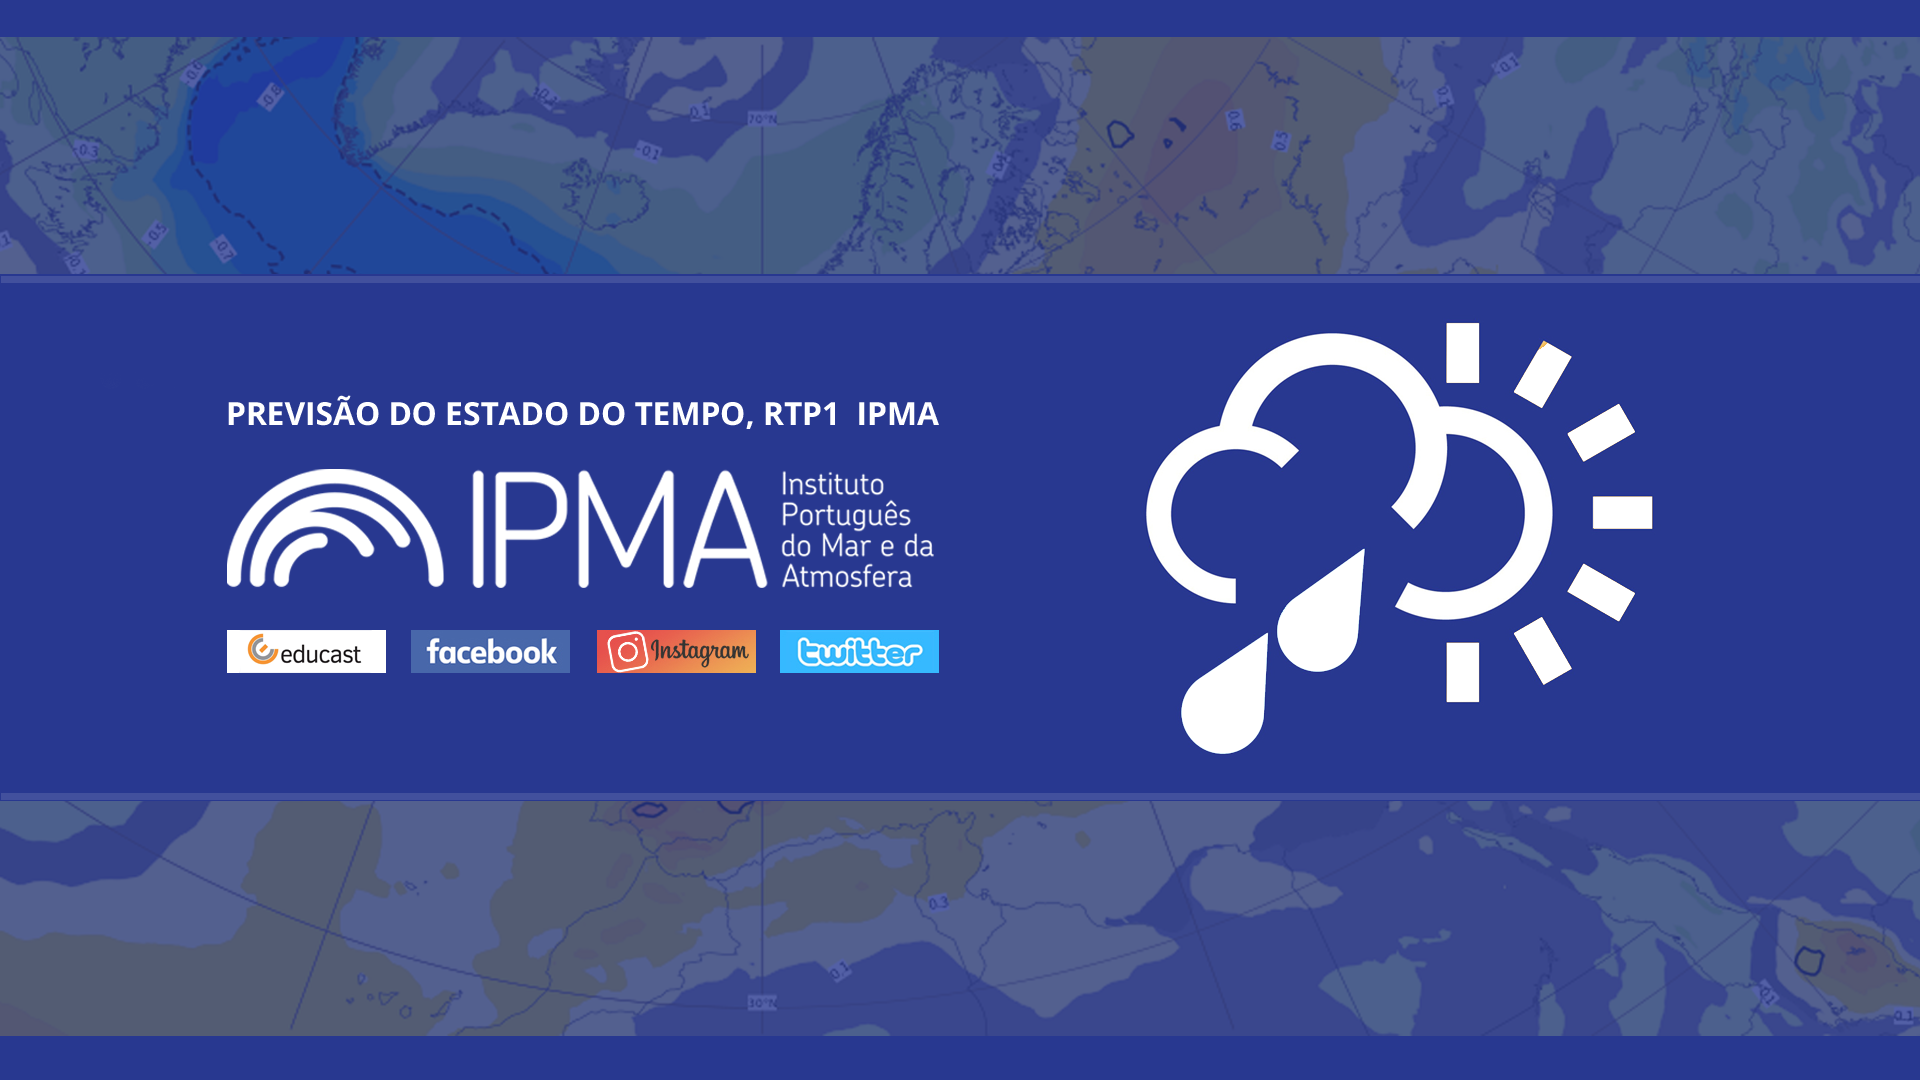  Previsão do estado do tempo, RTP1, 22-02-2022, IPMA.